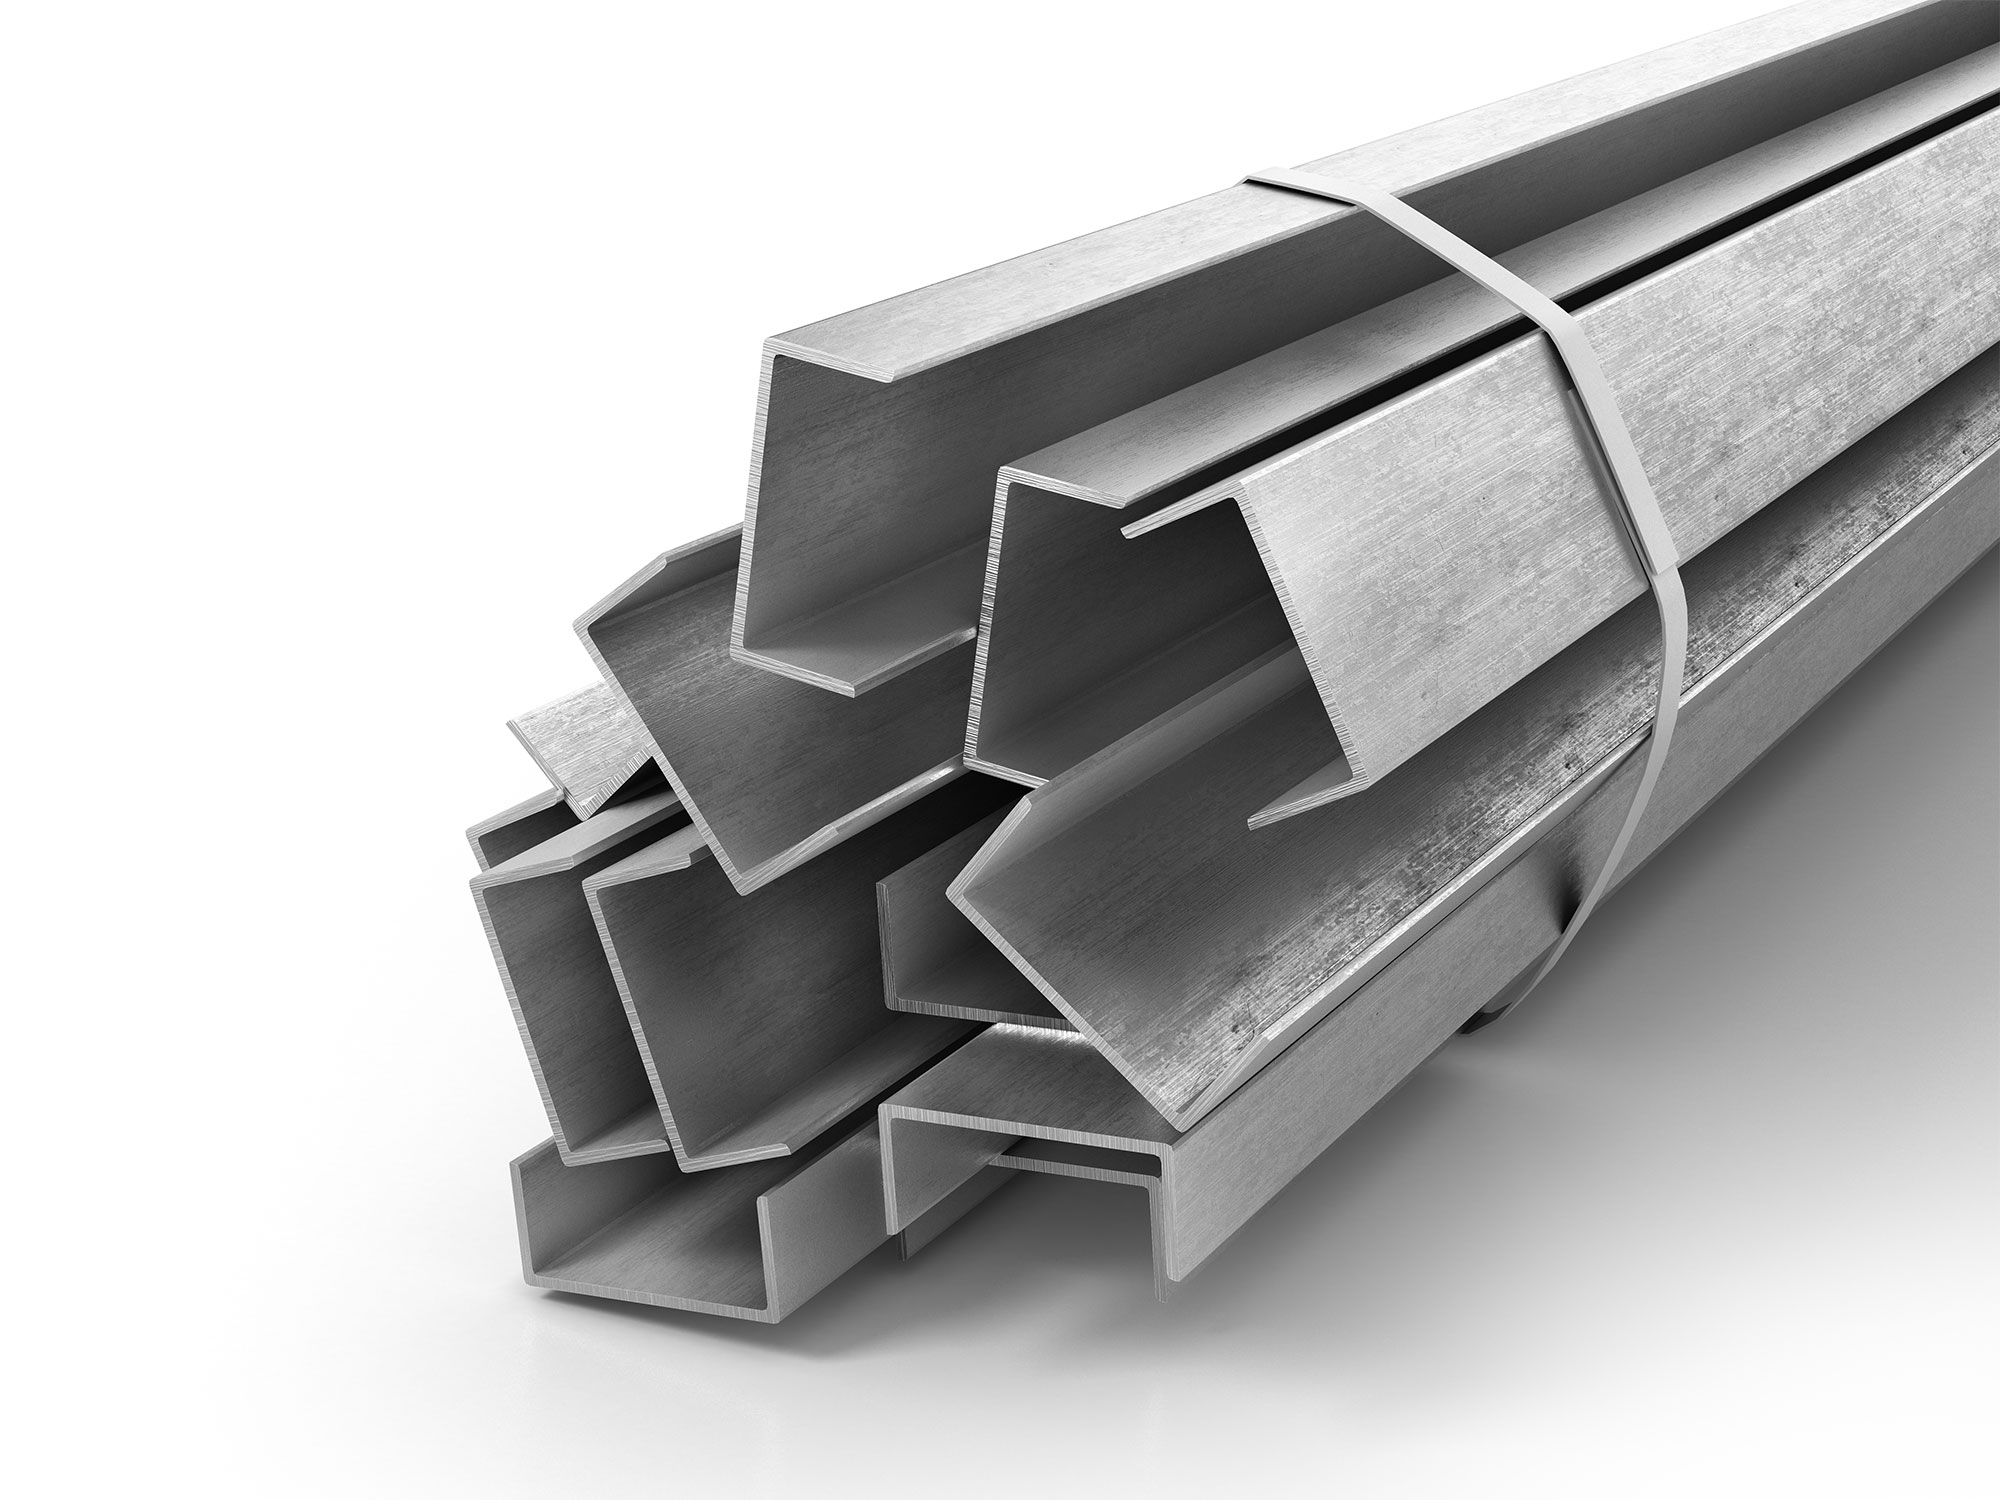 Profilé u aluminium 30x30 - Long. 1 à 4 mètres - Comment Fer